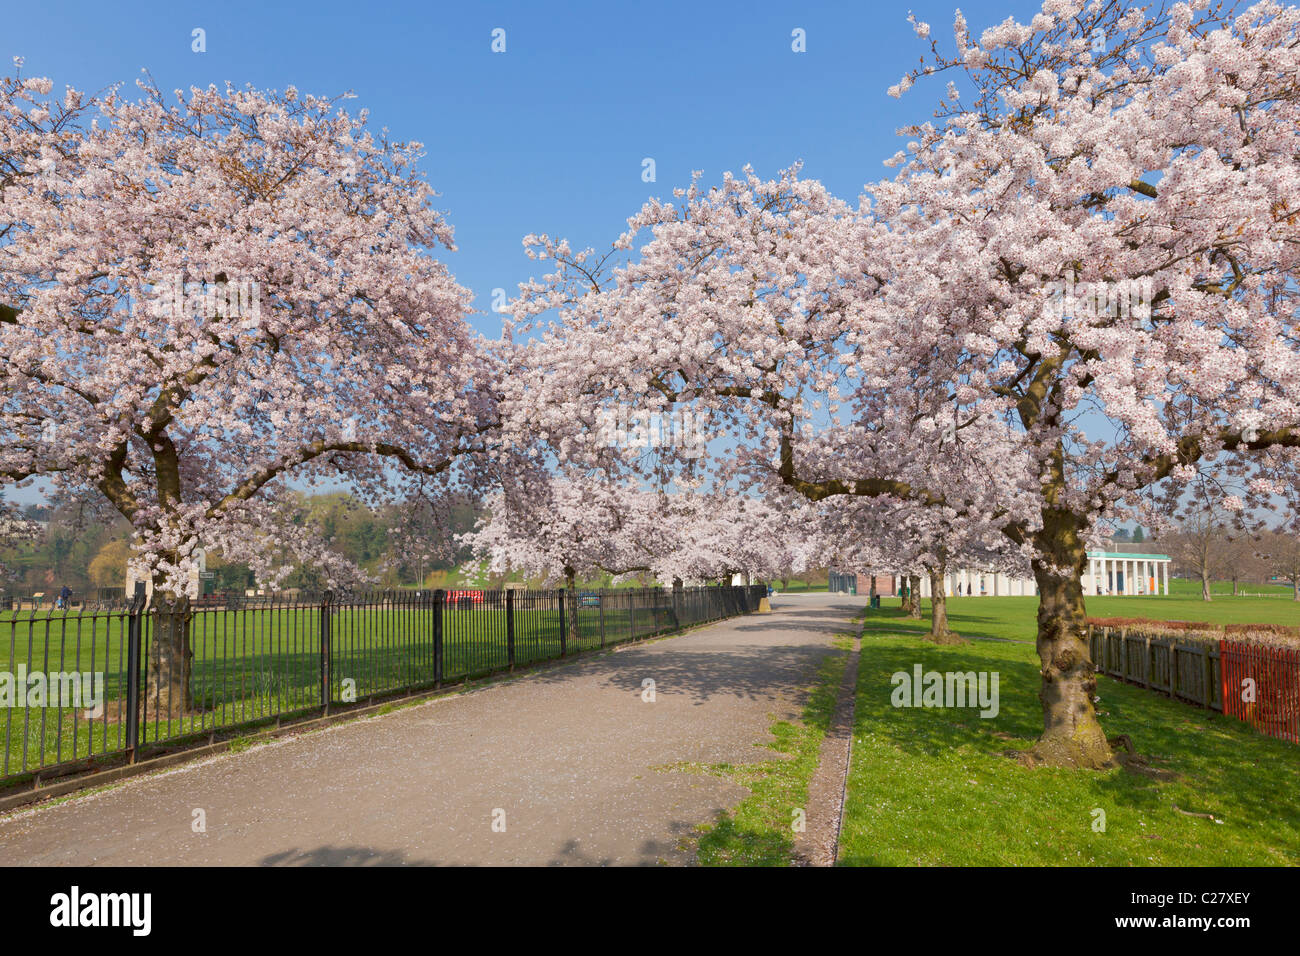 Cerisiers en fleurs sur les arbres du campus du parc universitaire de Nottingham Notinghamshire Angleterre GB Royaume-Uni Europe Banque D'Images